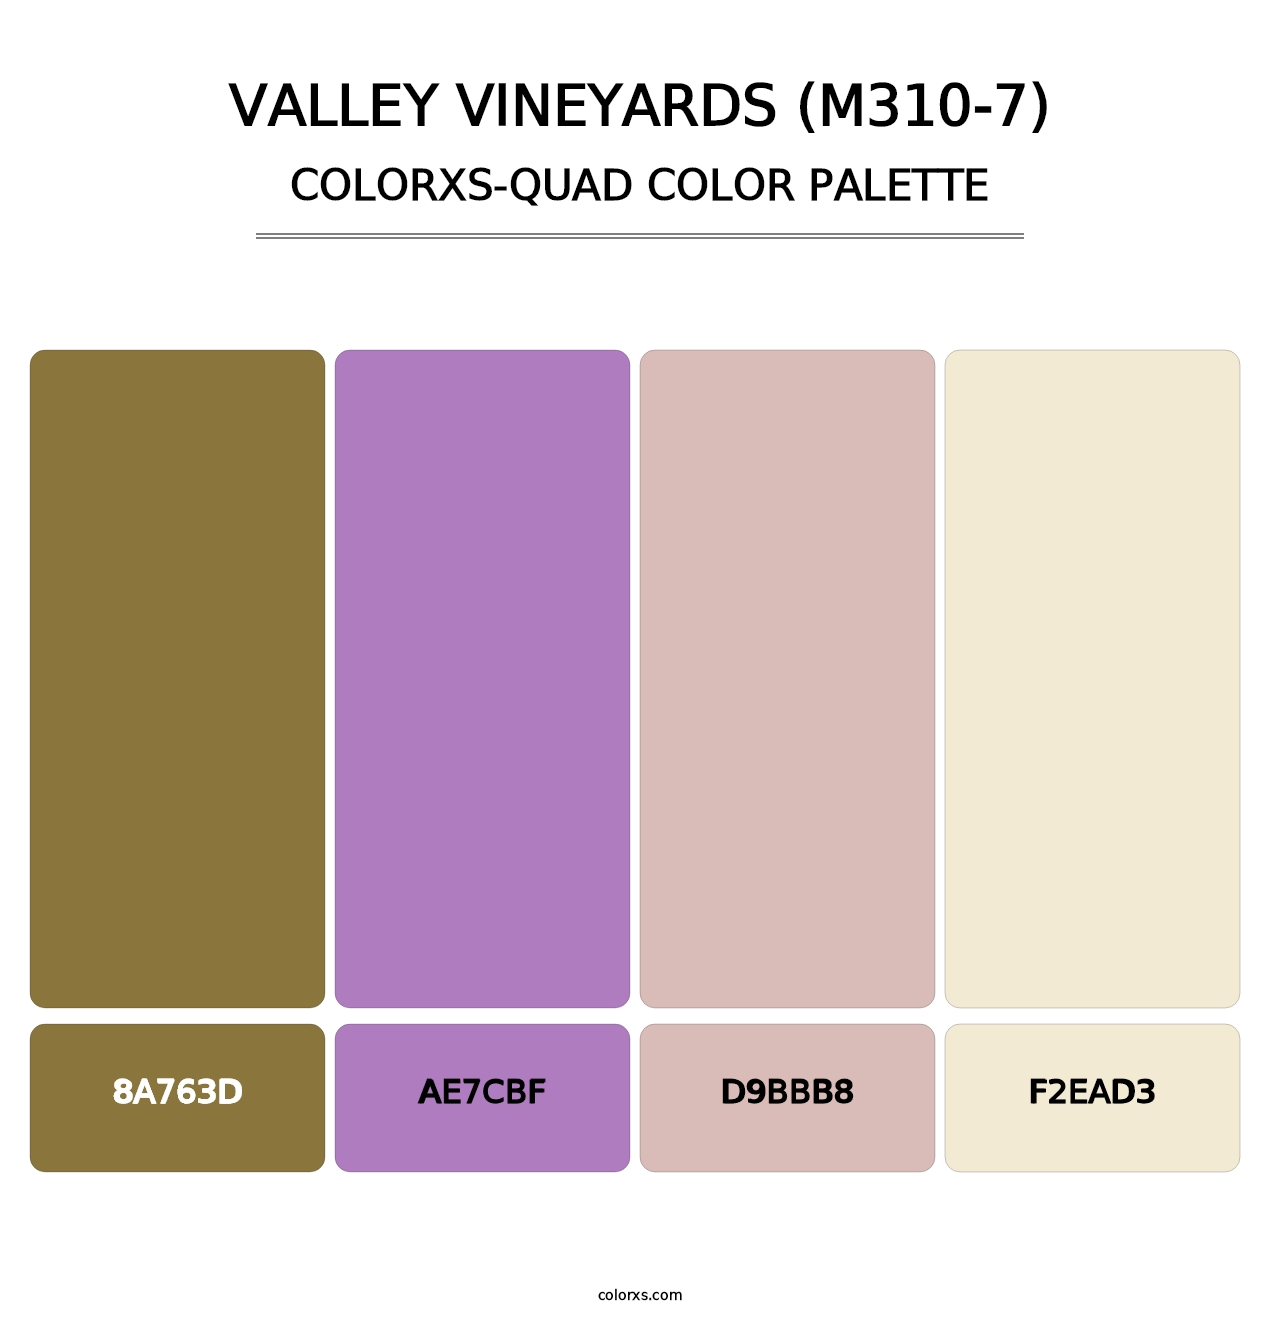 Valley Vineyards (M310-7) - Colorxs Quad Palette